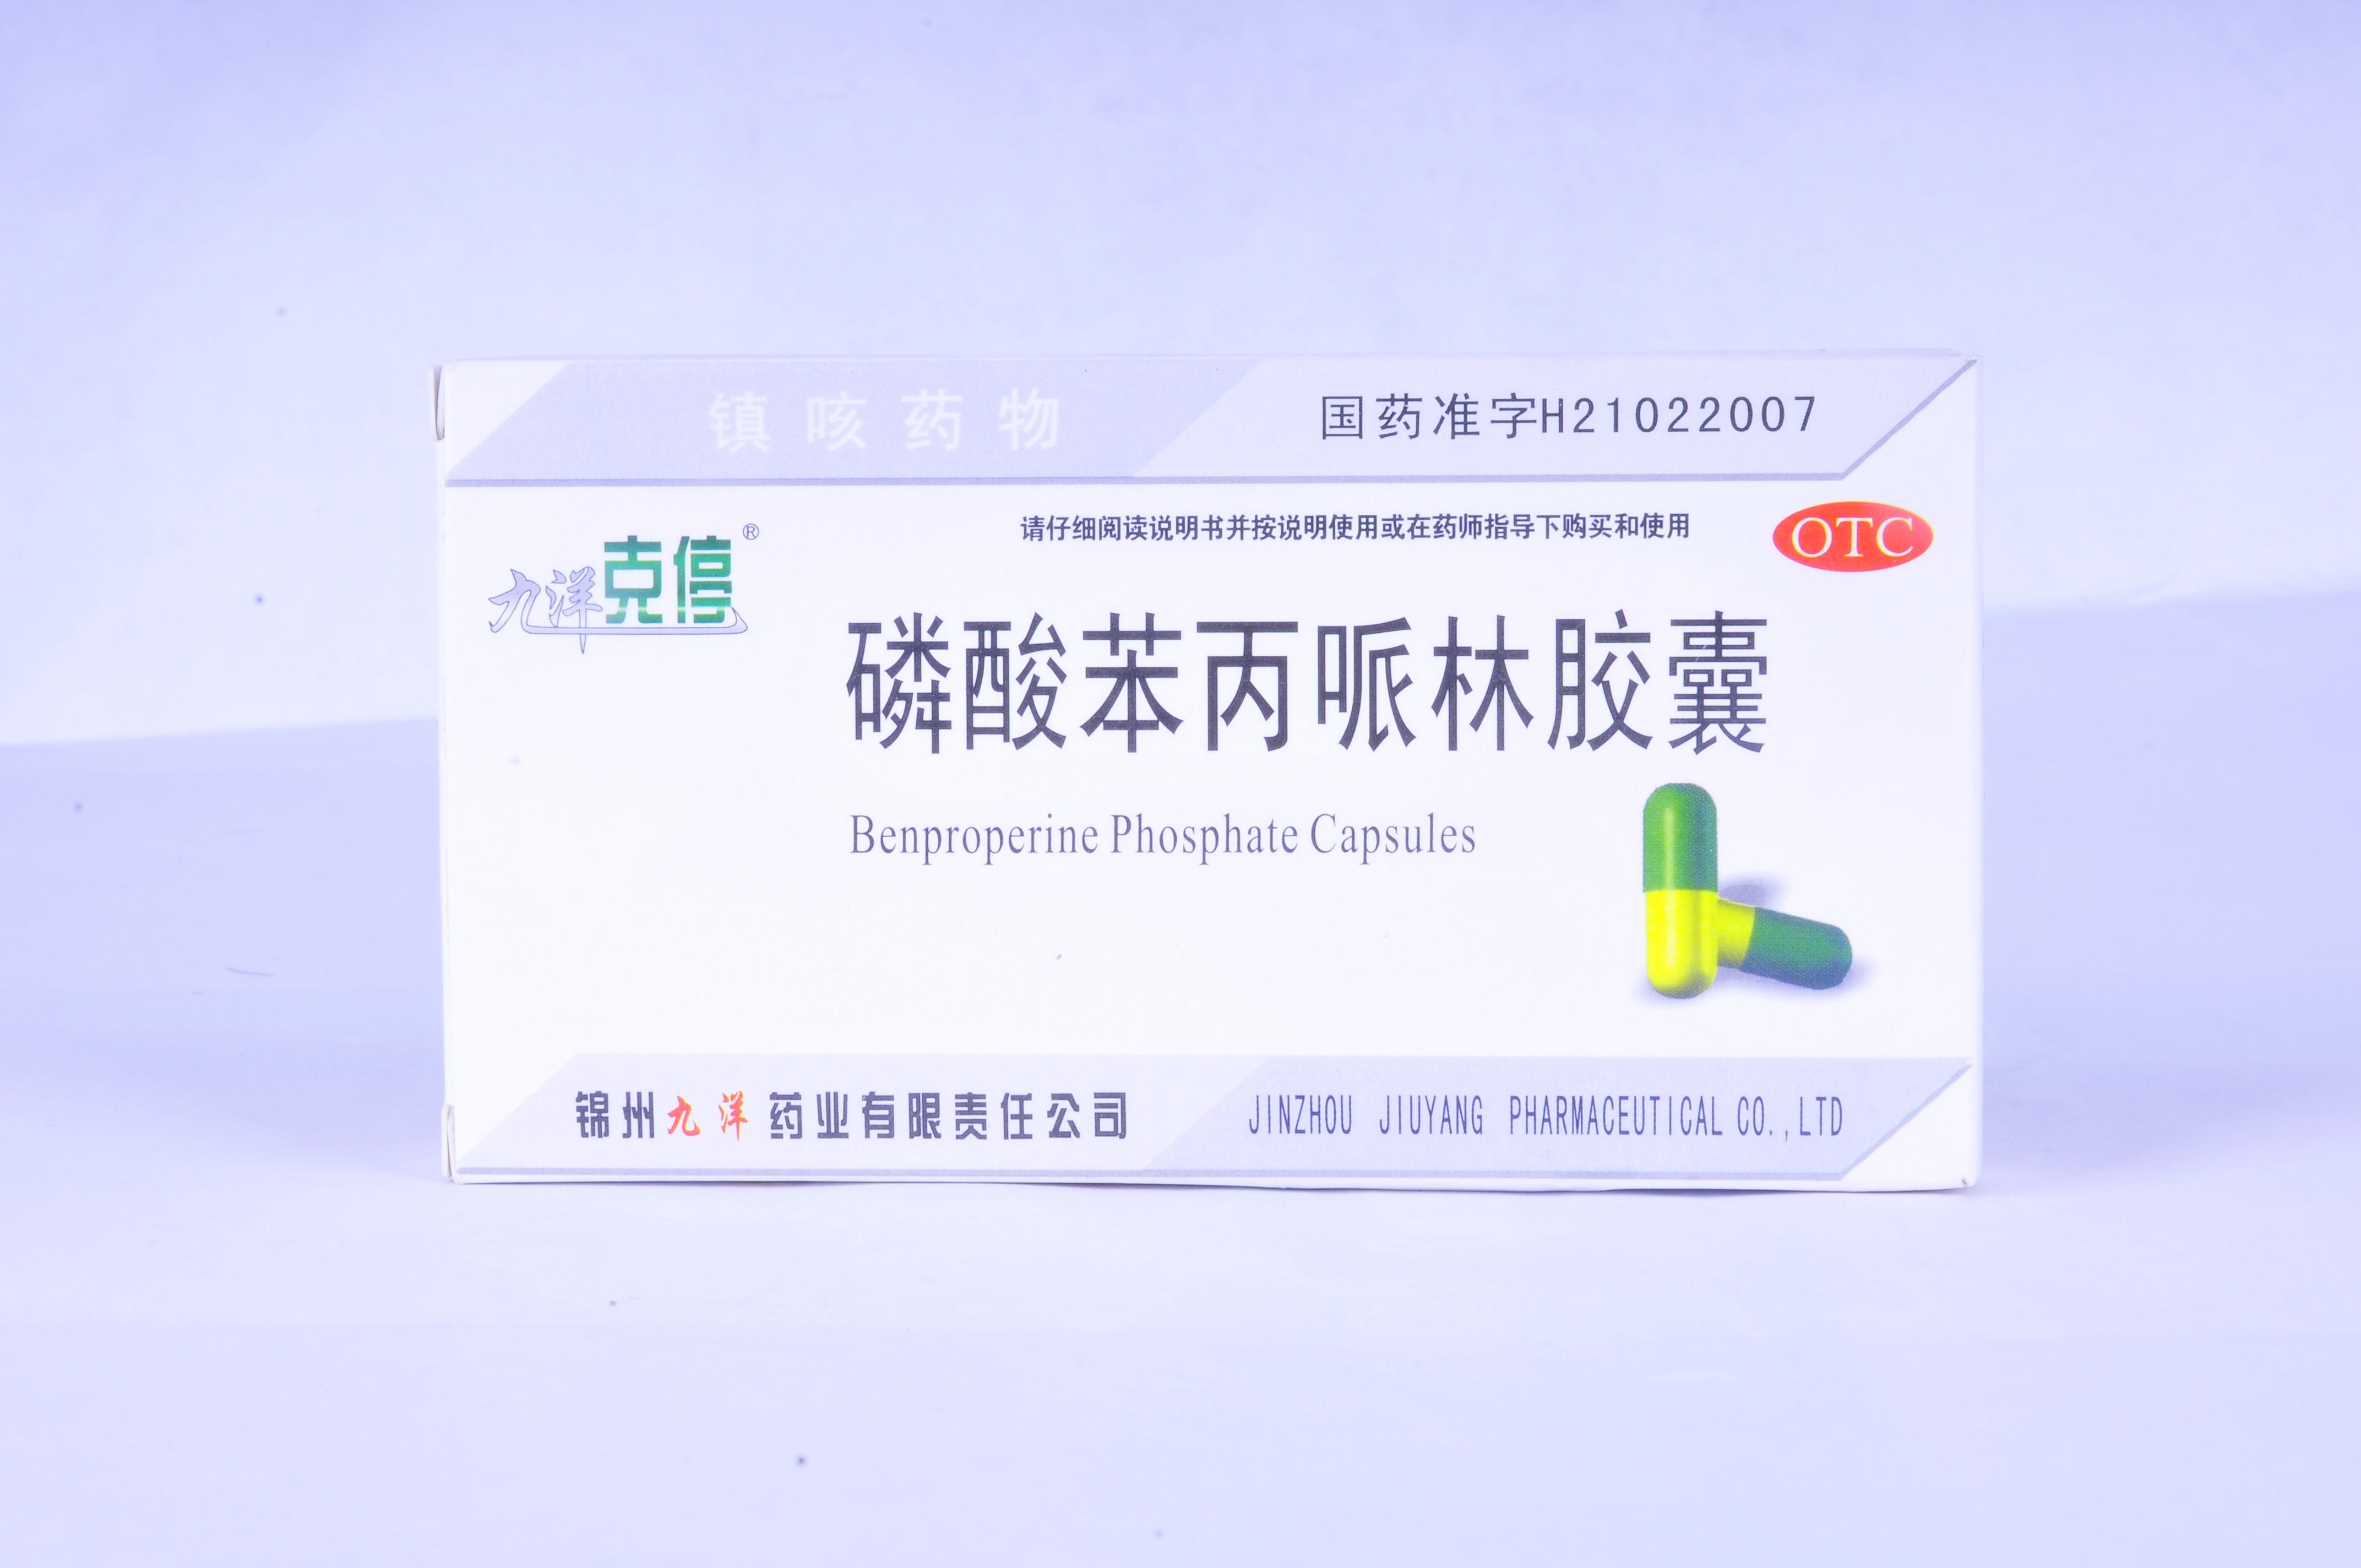 【九洋克停】磷酸苯丙哌林胶囊-锦州九洋药业有限责任